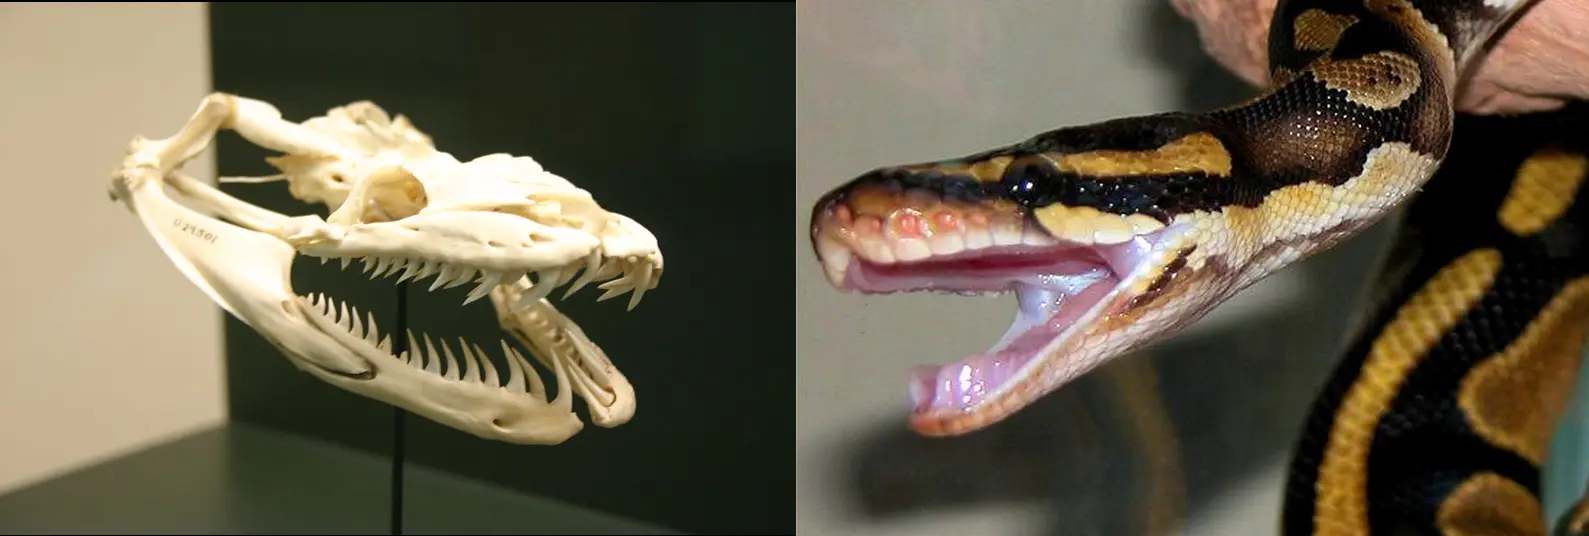 À esquerda, um crânio de uma píton-reticulada e à direita uma píton-real. Ambas possuem dentição áglifa. Imagens de Ryan Somma e Charlie J via Flickr